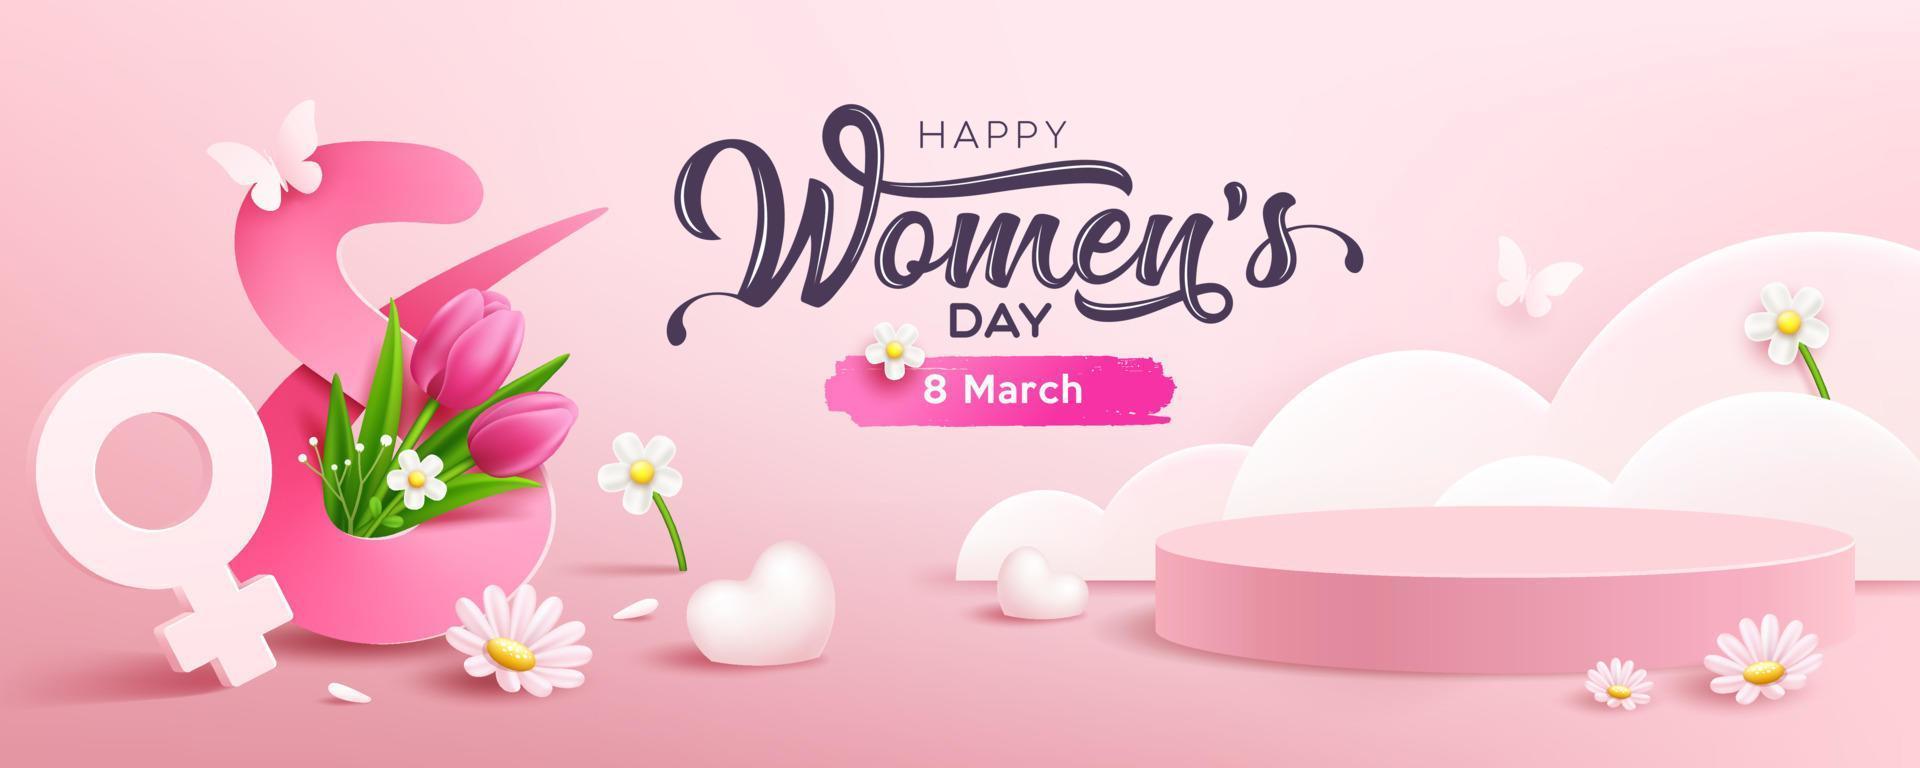 Da donna giorno 8 marzo, presentazione podio e cuore, bianca fiori, la farfalla, concetto design striscione, rosa sfondo, eps10 vettore illustrazione.